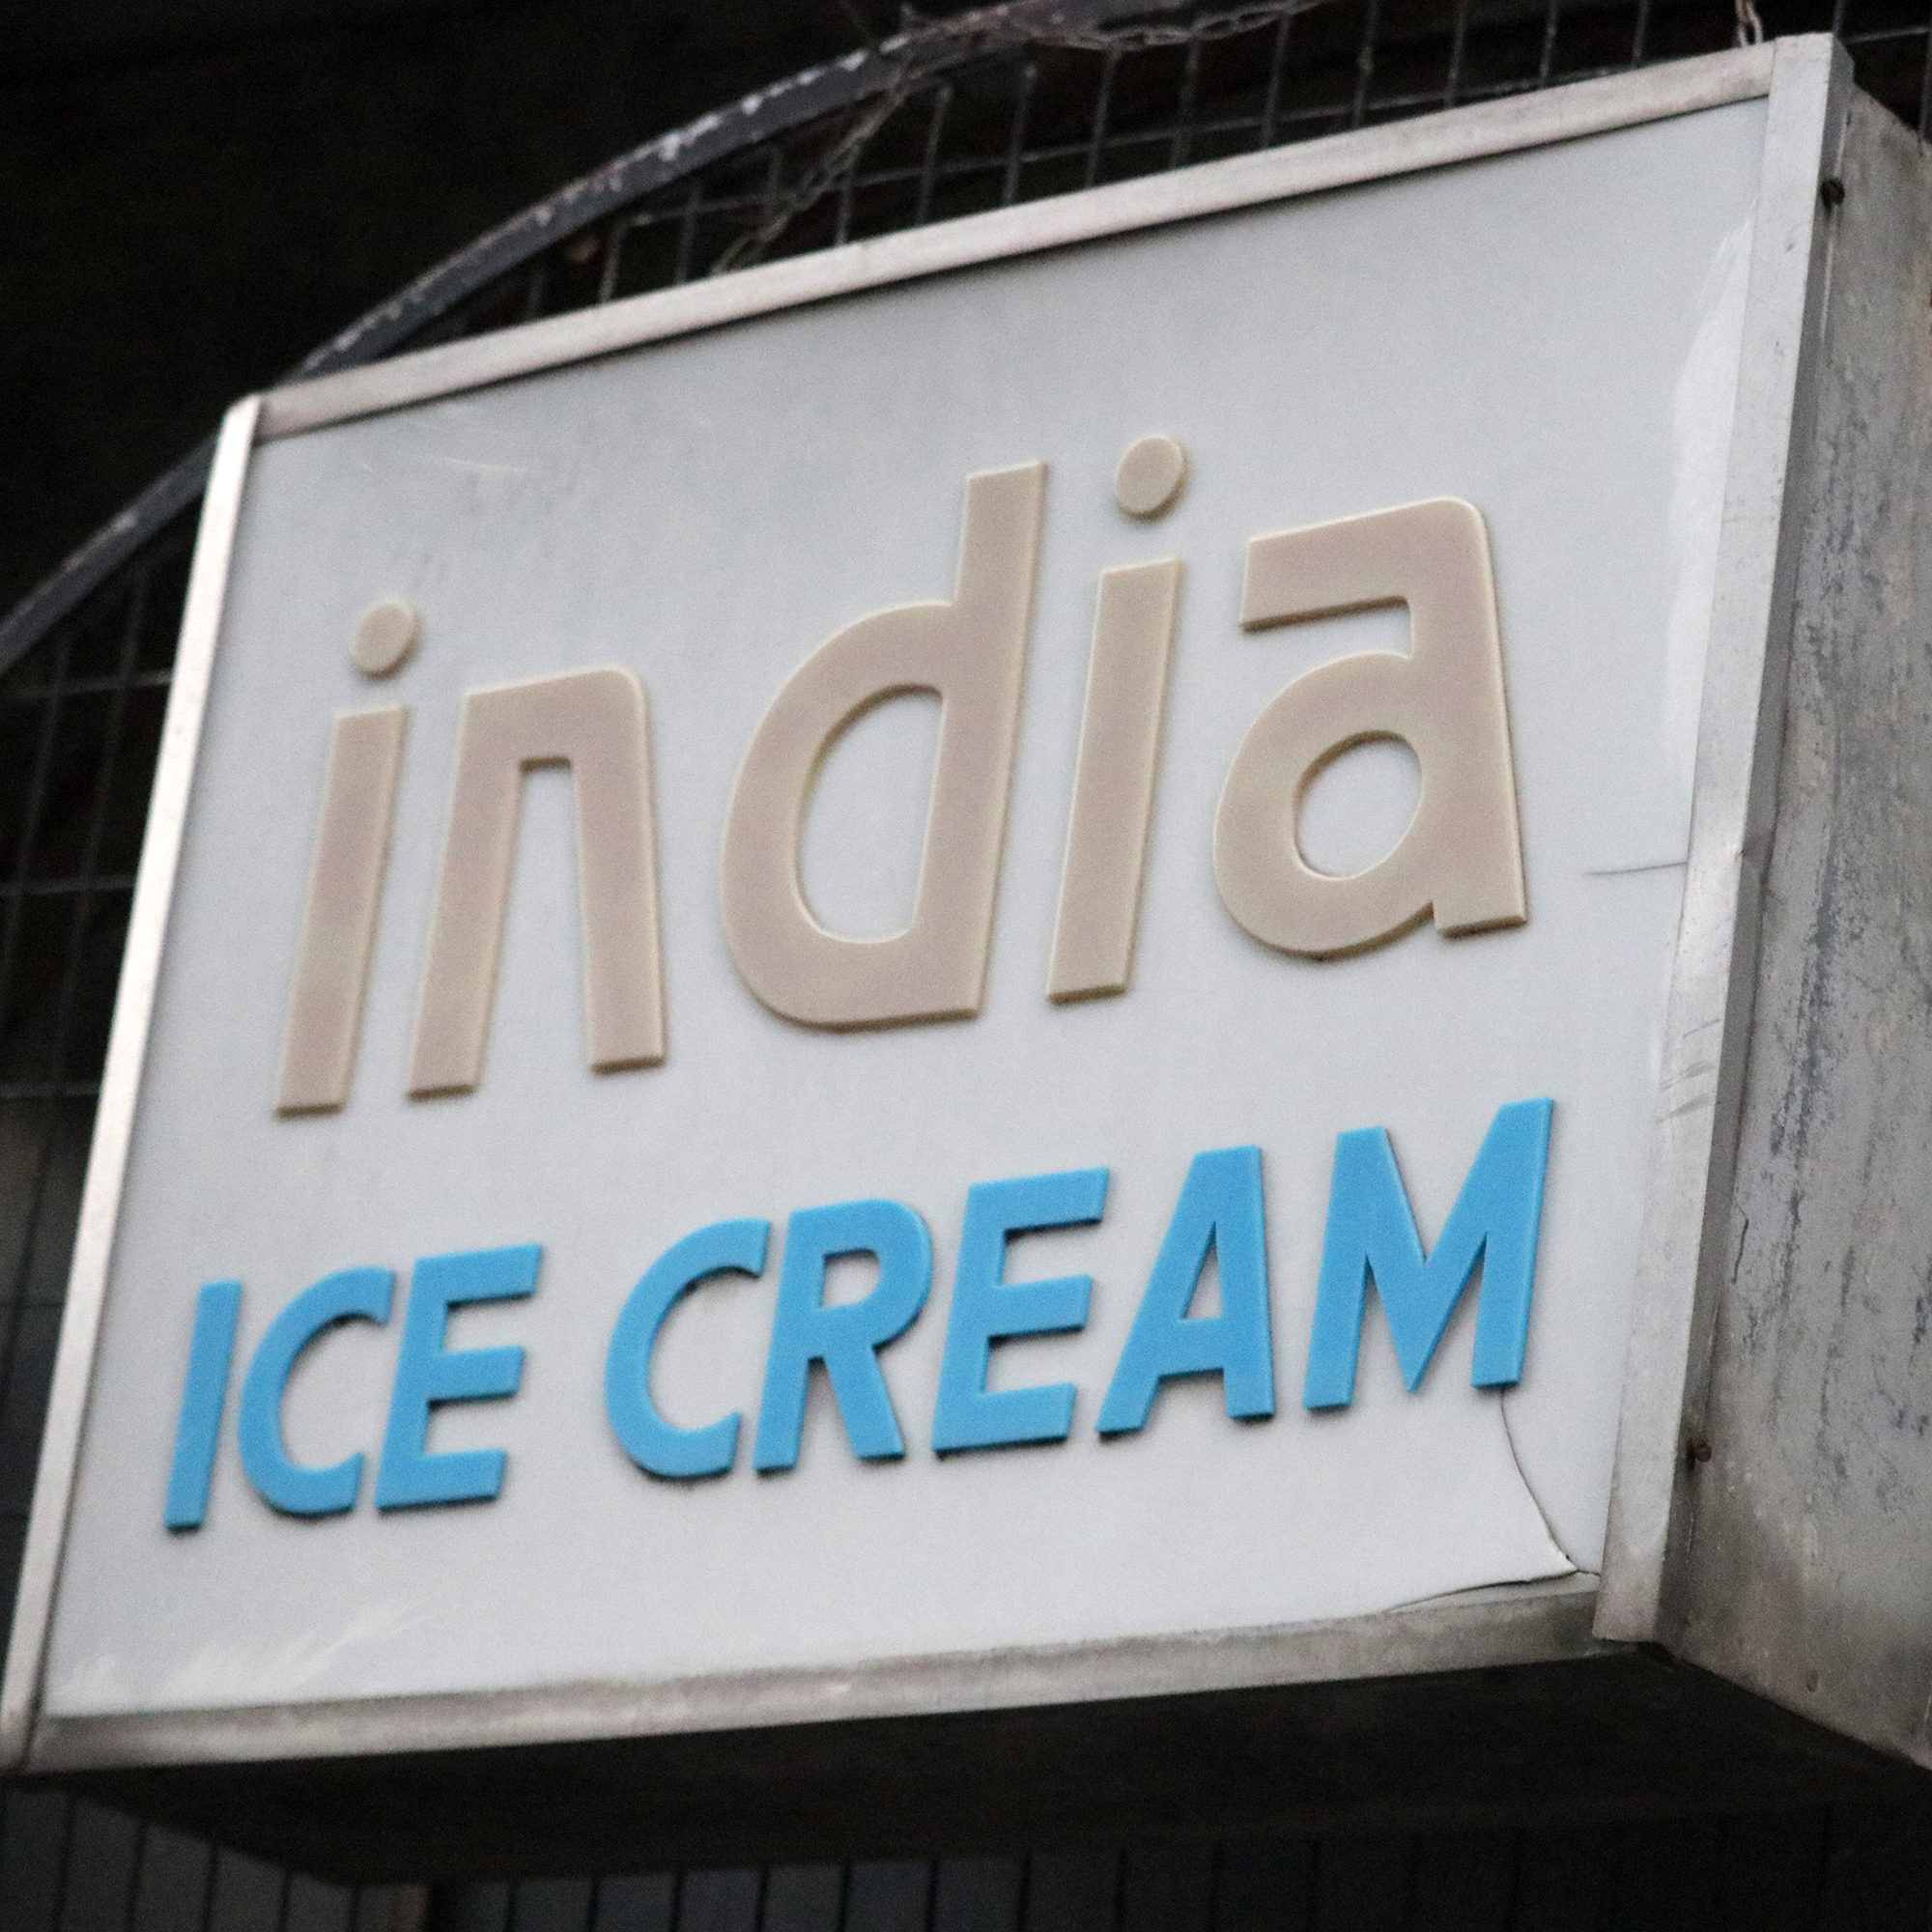 India Ice Cream